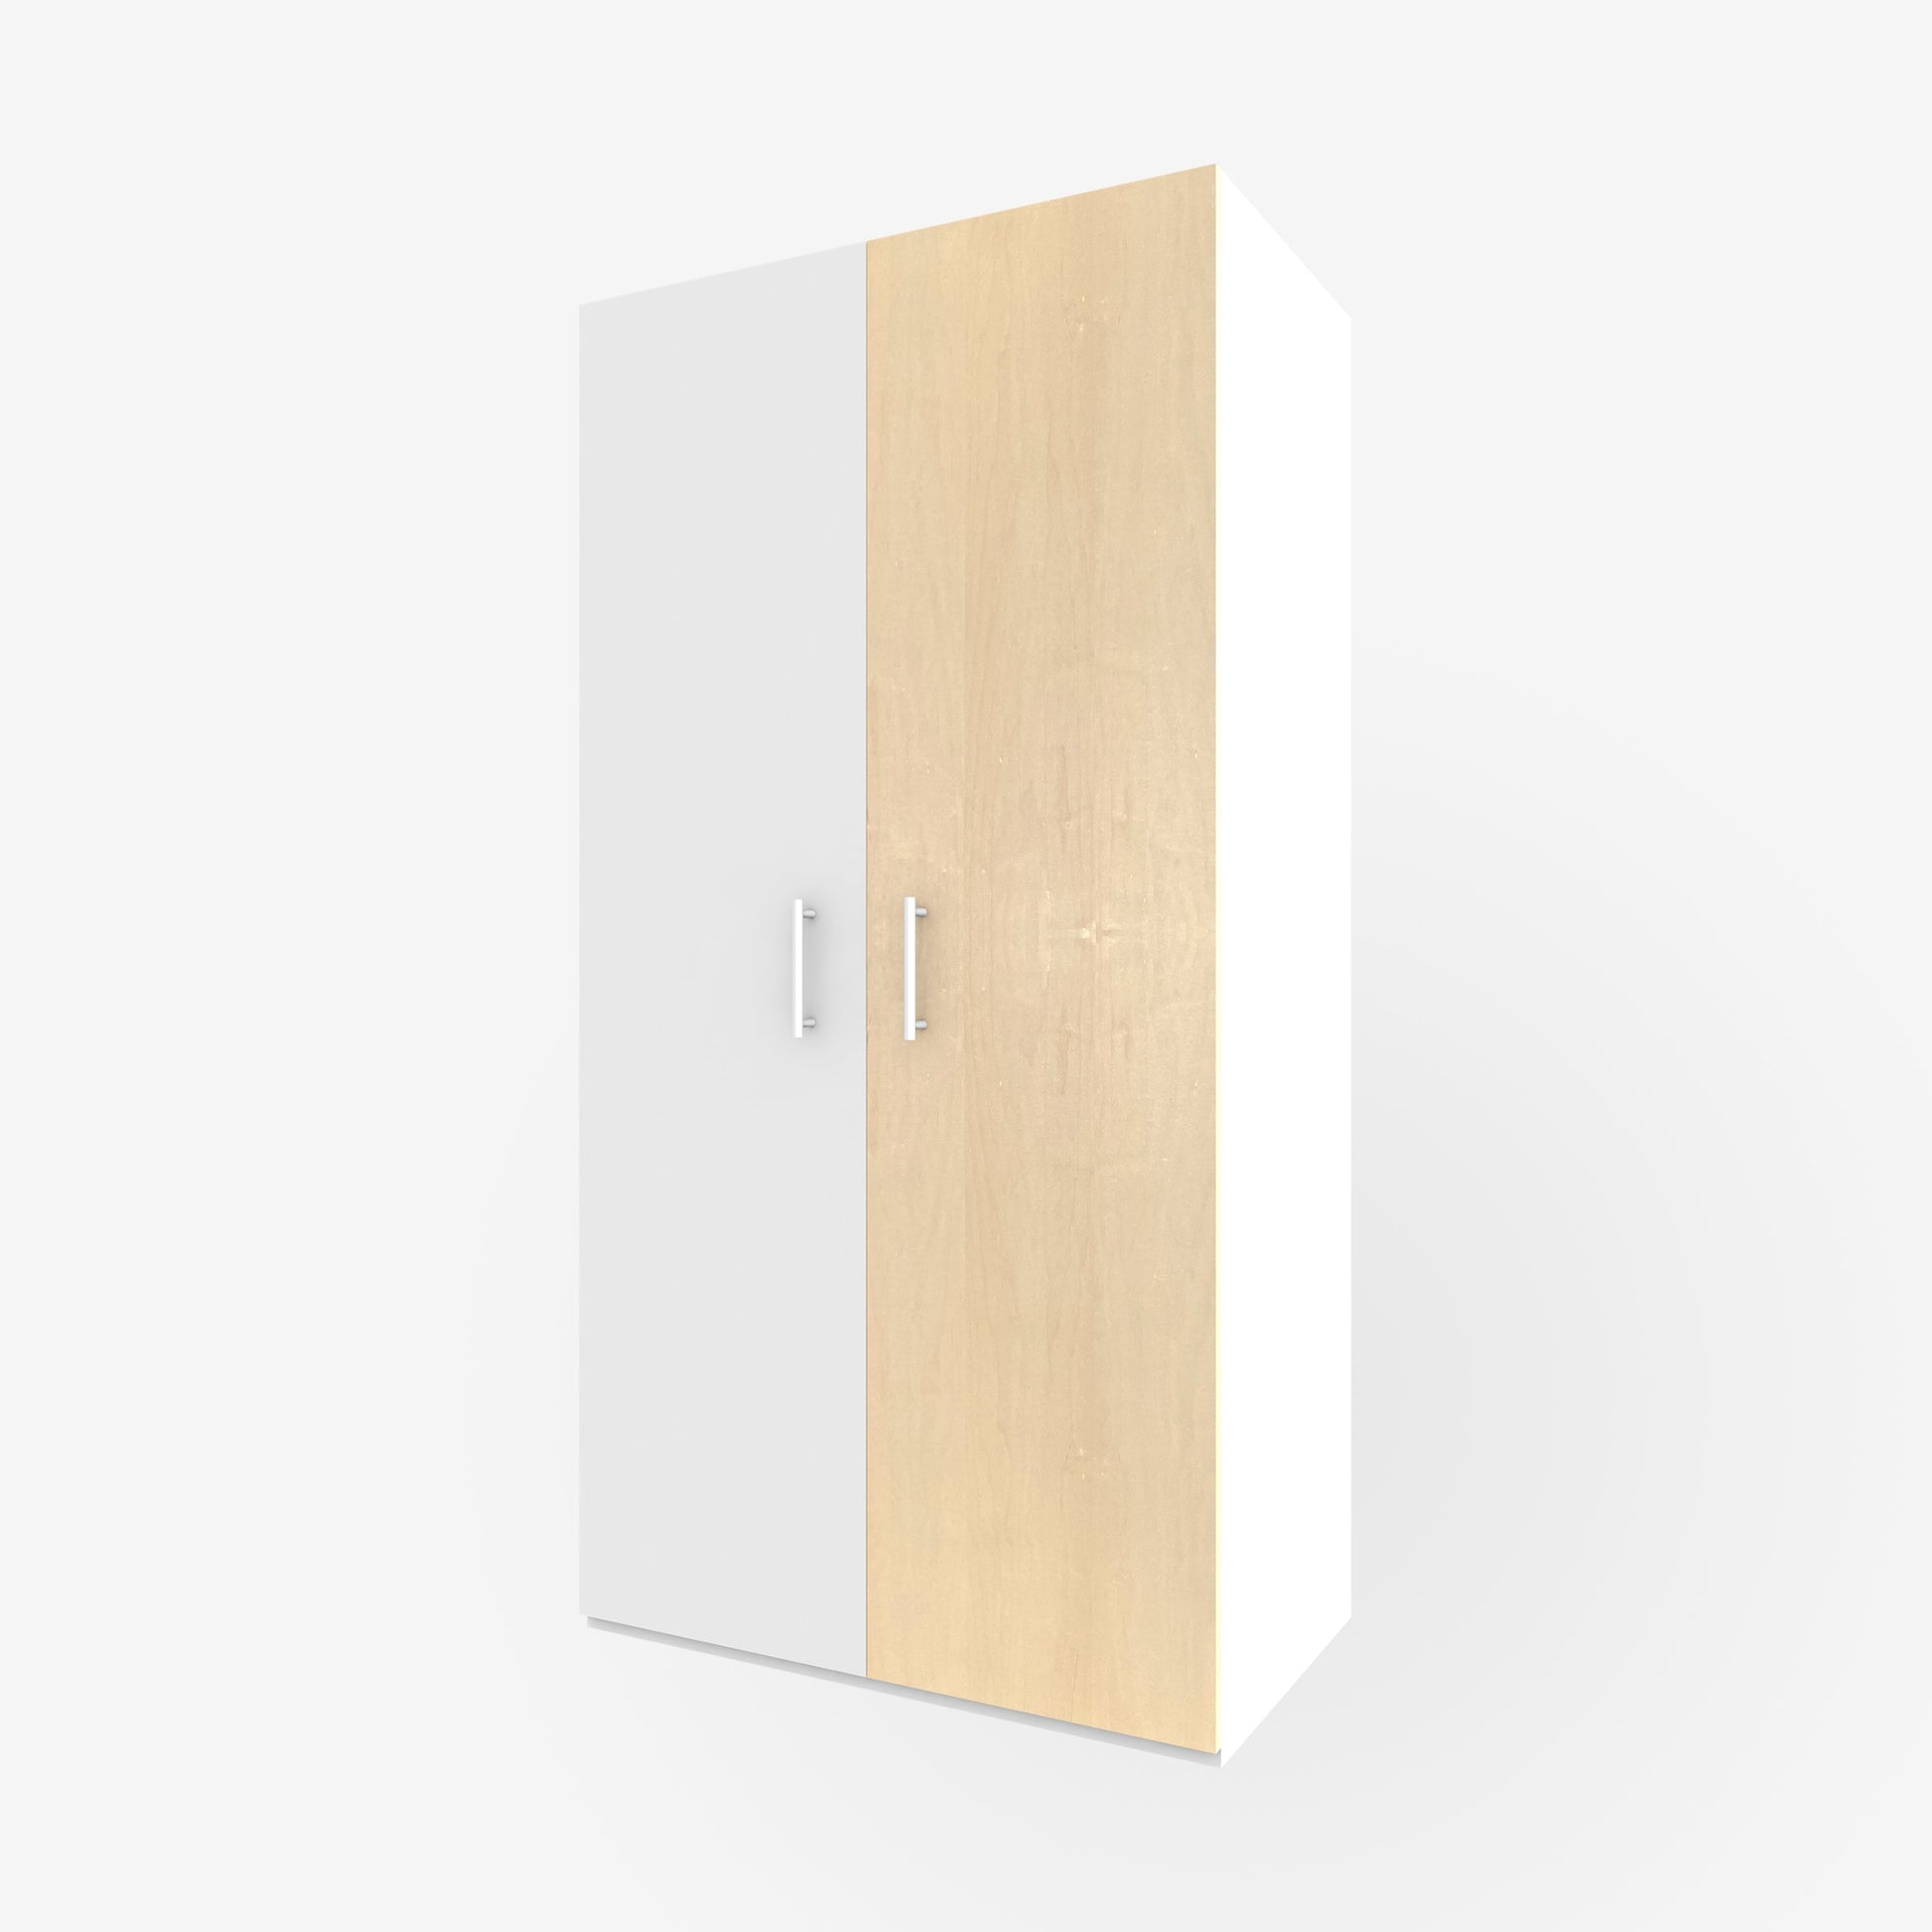 19.5" x 79" real wood veneer maple slab door for Ikea or Swedeboxx pax closet cabinet